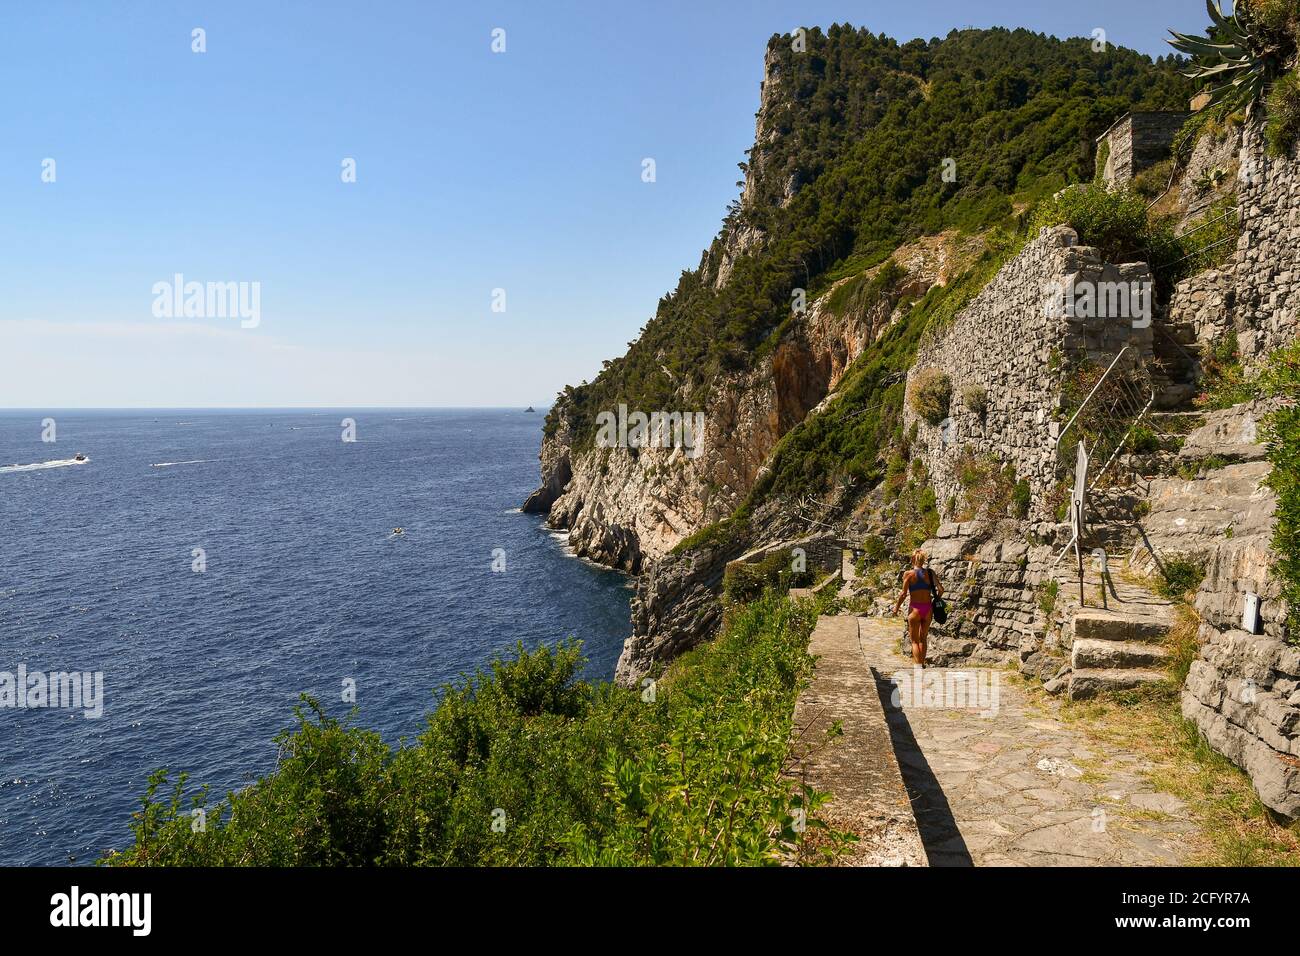 Una ragazza da dietro camminando sul sentiero in pietra della scogliera che domina la riva del mare in estate, Porto Venere, la Spezia, Liguria, Italia Foto Stock